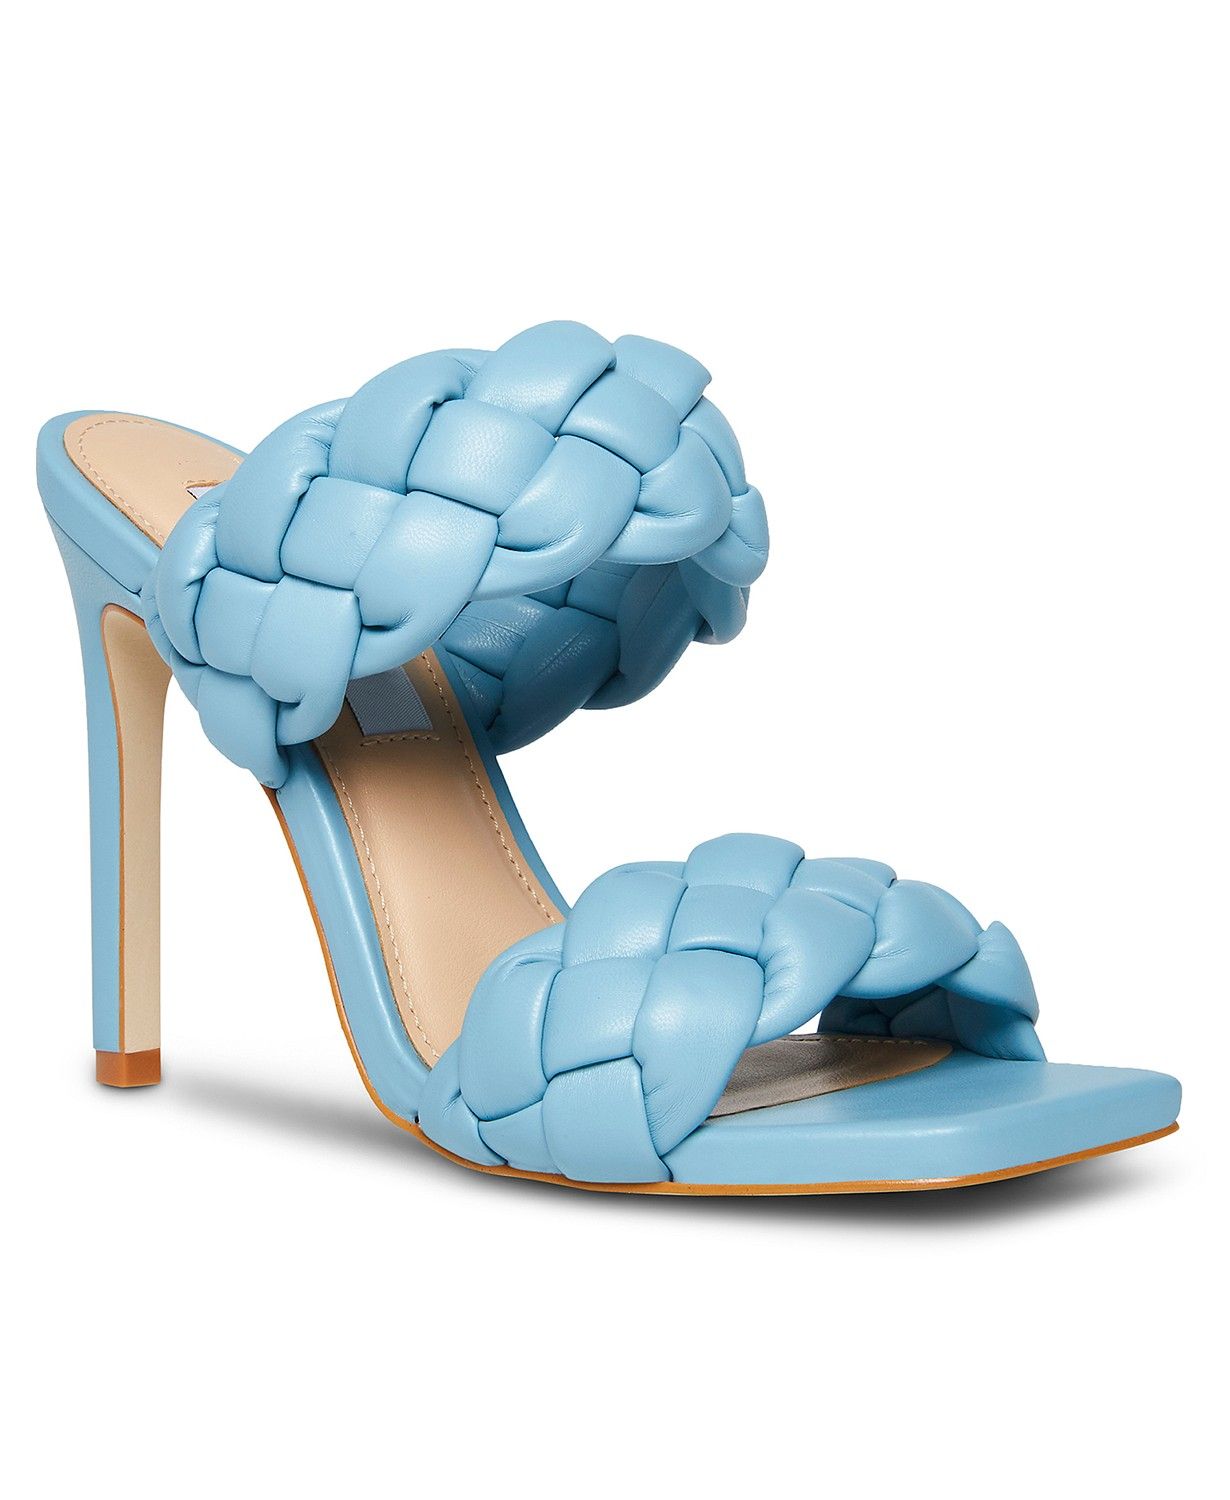 Steve Madden Women's Kenley Braided Dress Sandals & Reviews - Sandals - Shoes - Macy's | Macys (US)